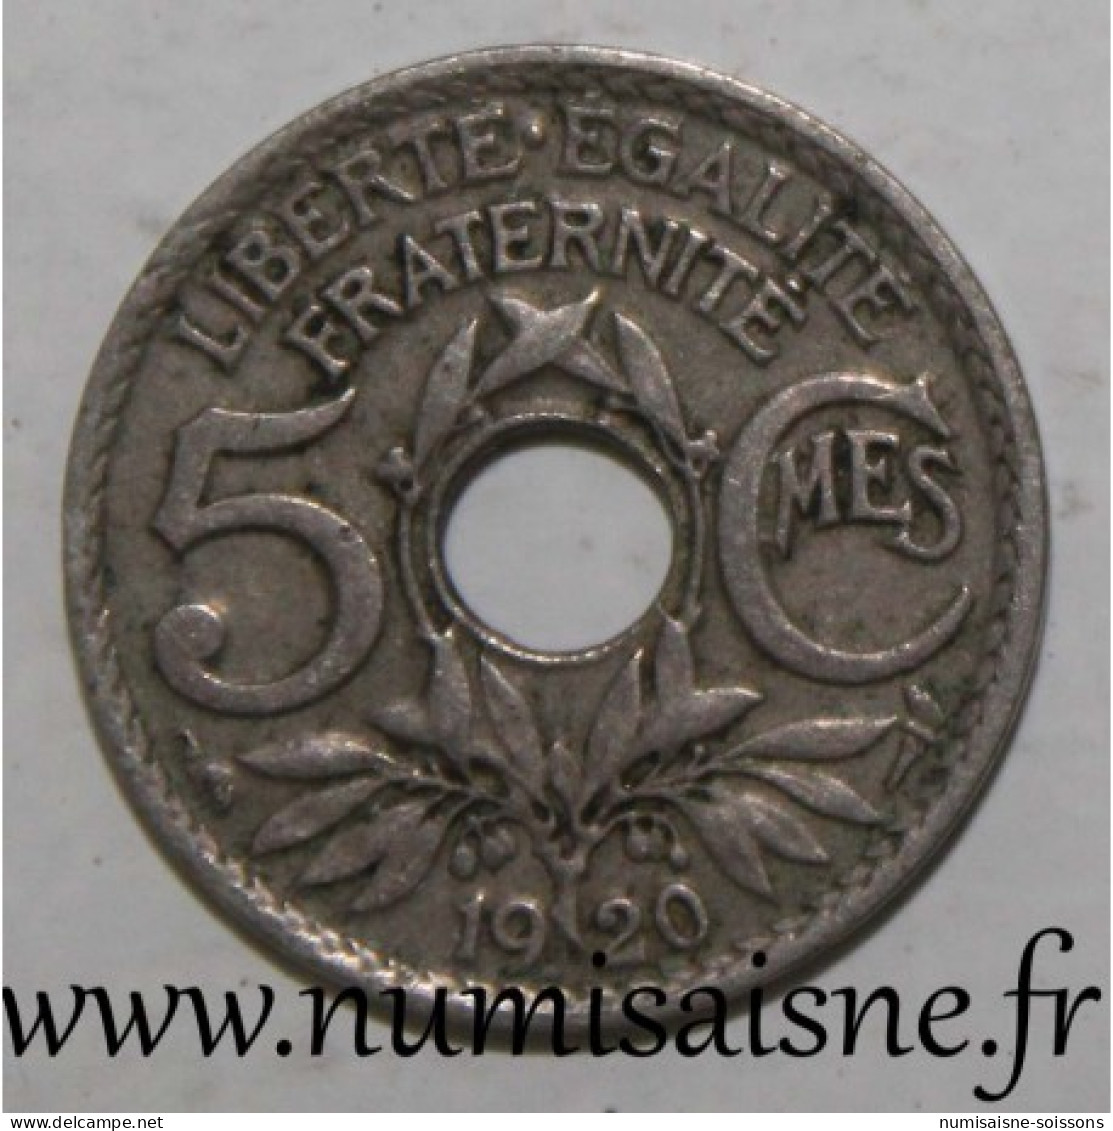 GADOURY 170 - 5 CENTIMES 1920 - TYPE LINDAUER - PETIT MODULE - KM 875 - TTB - 5 Centimes